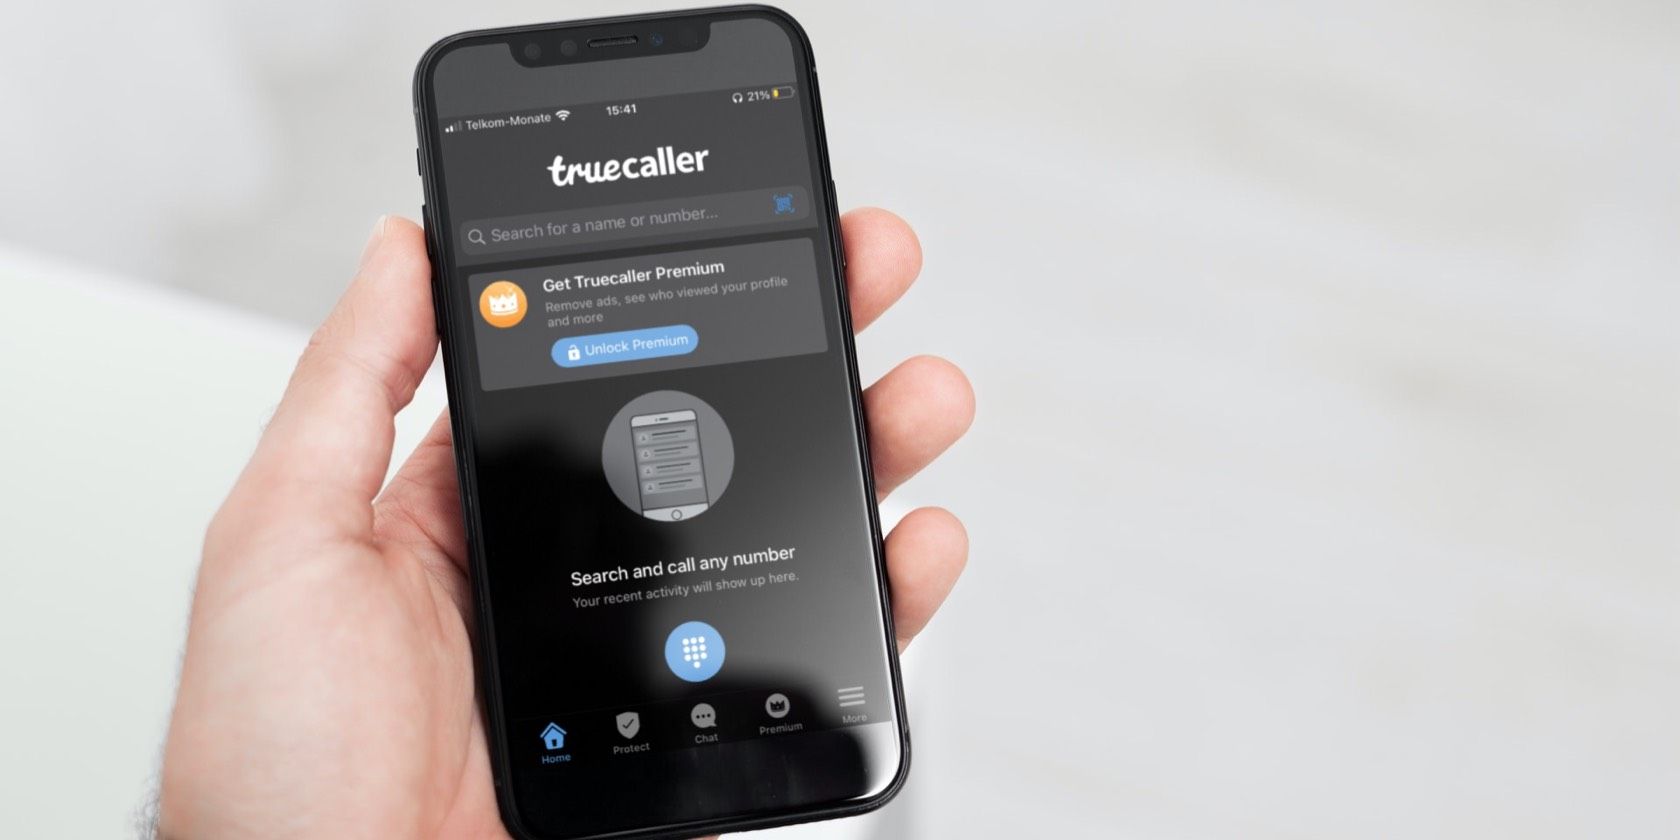 Hands holding iPhone on Truecaller app